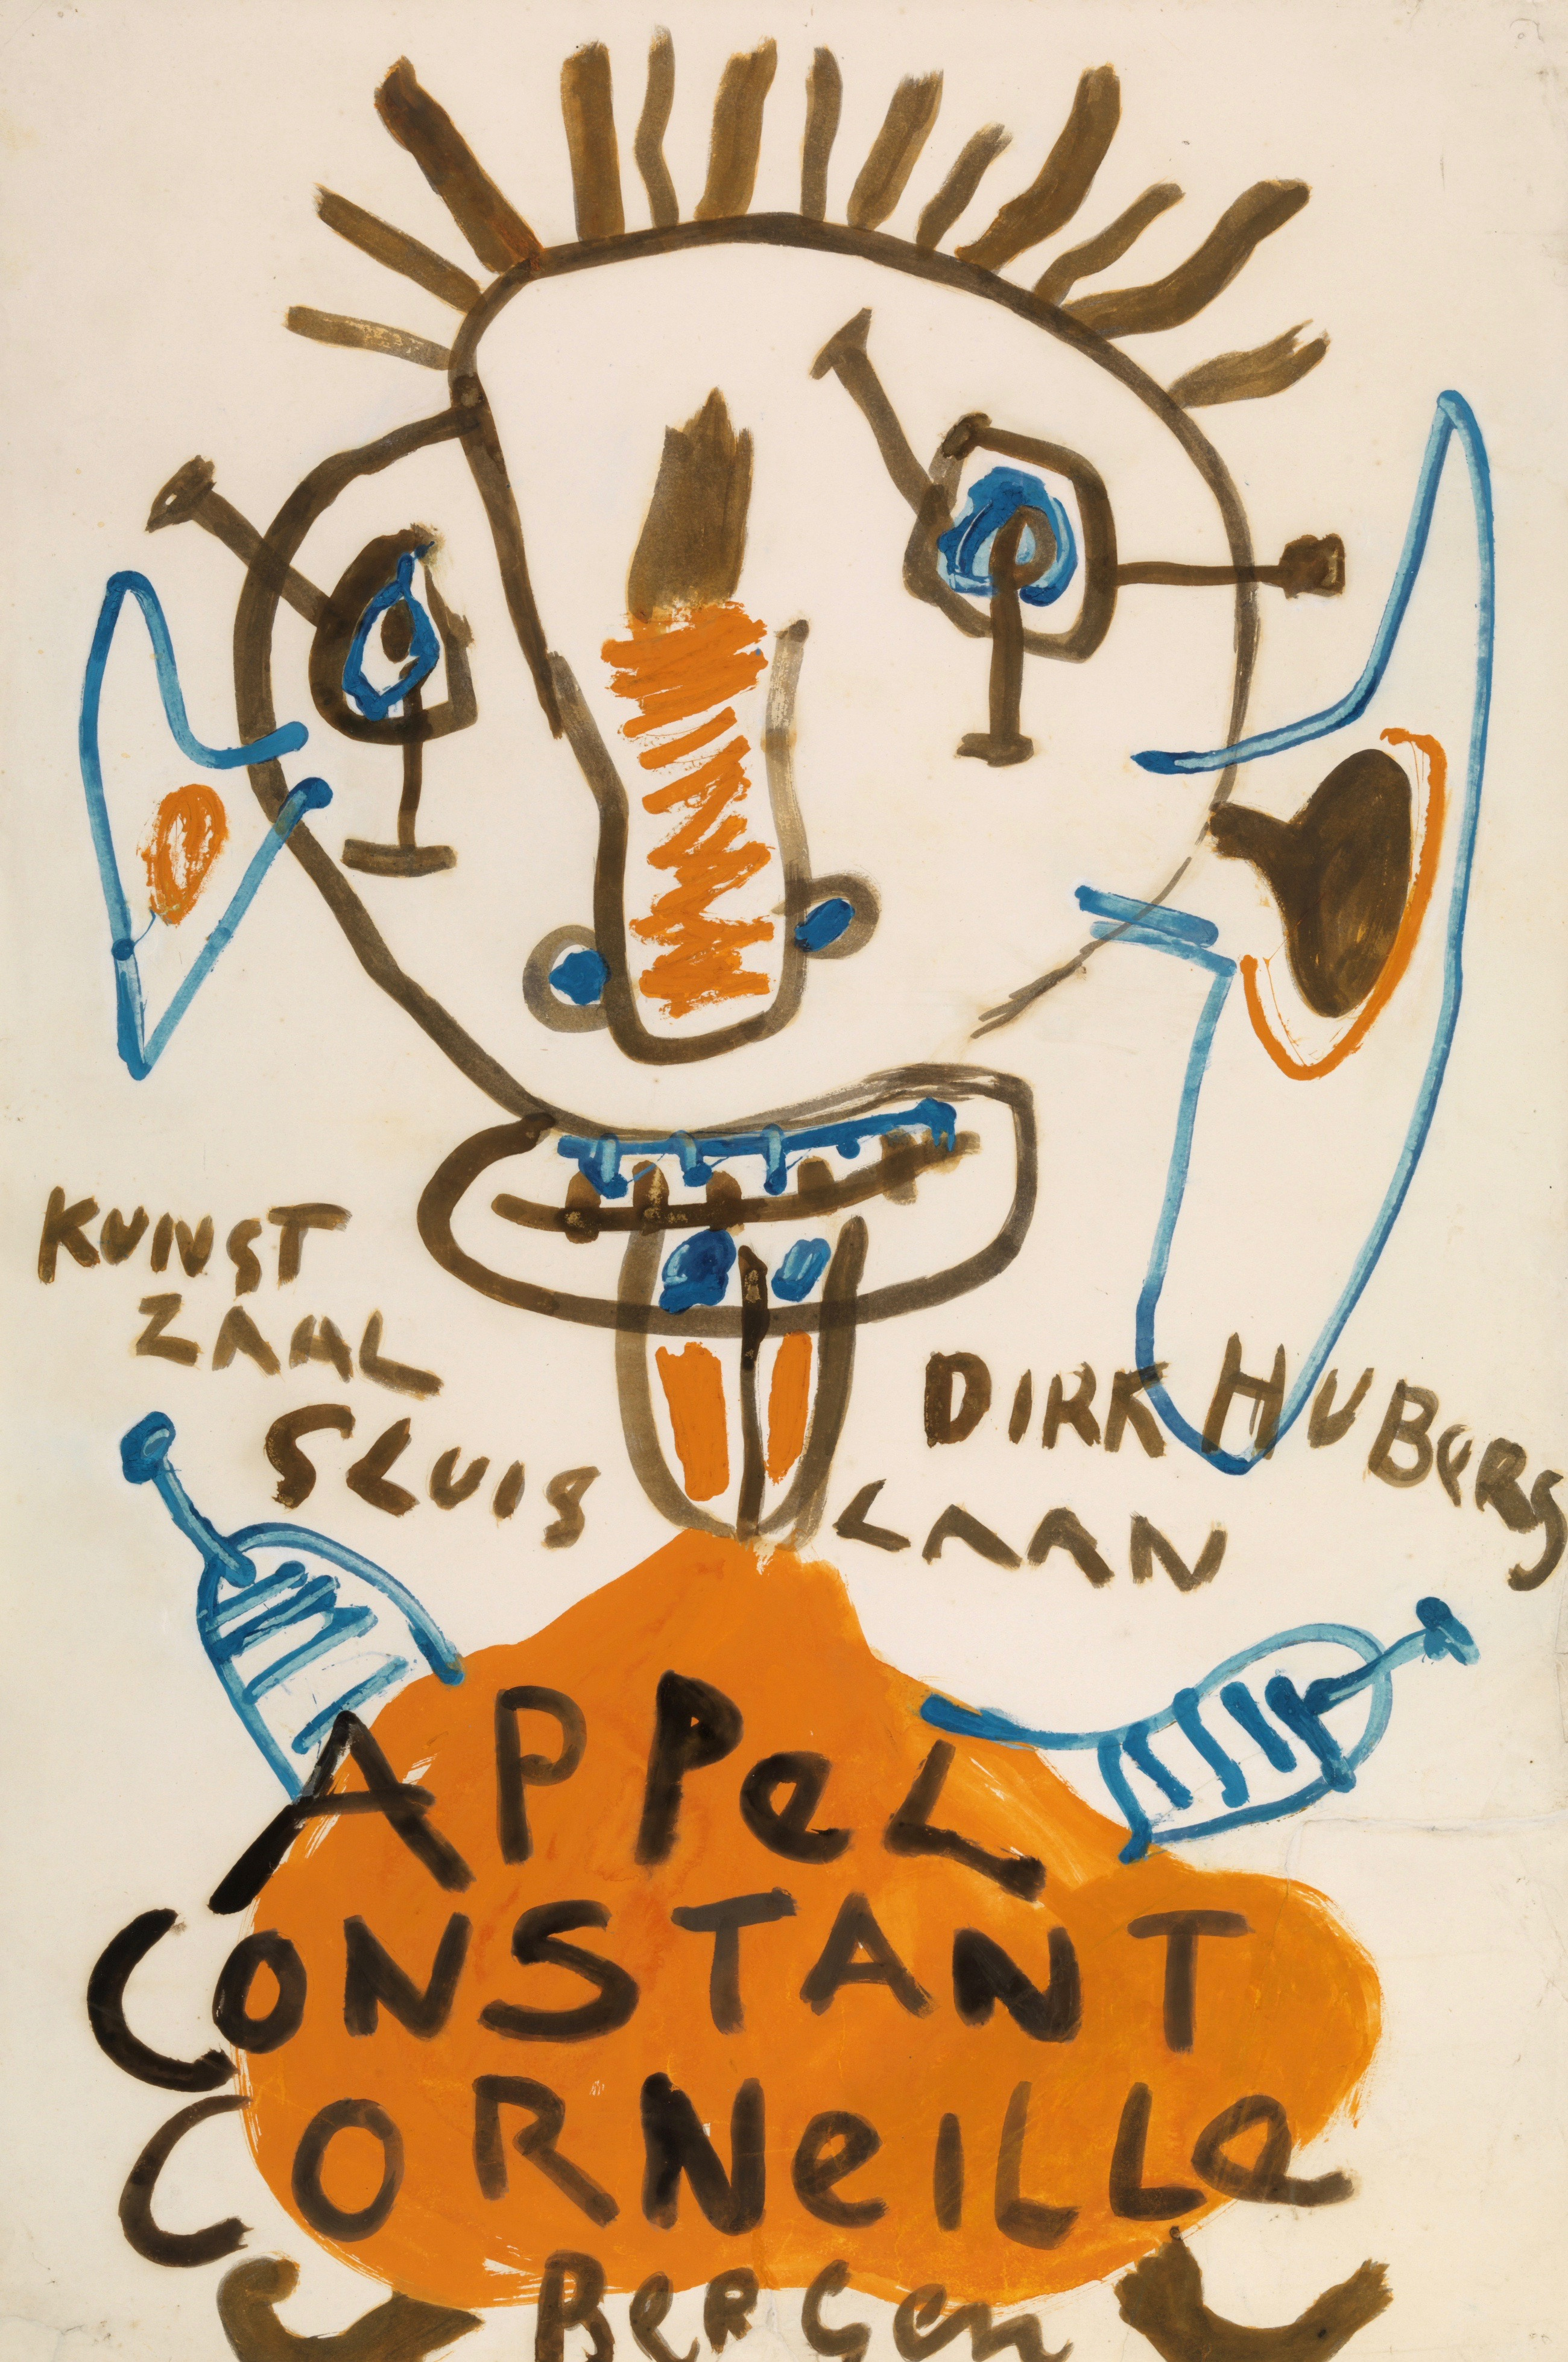 Appel Constant Corneille | Kunstzaal Hubers, 1949-4